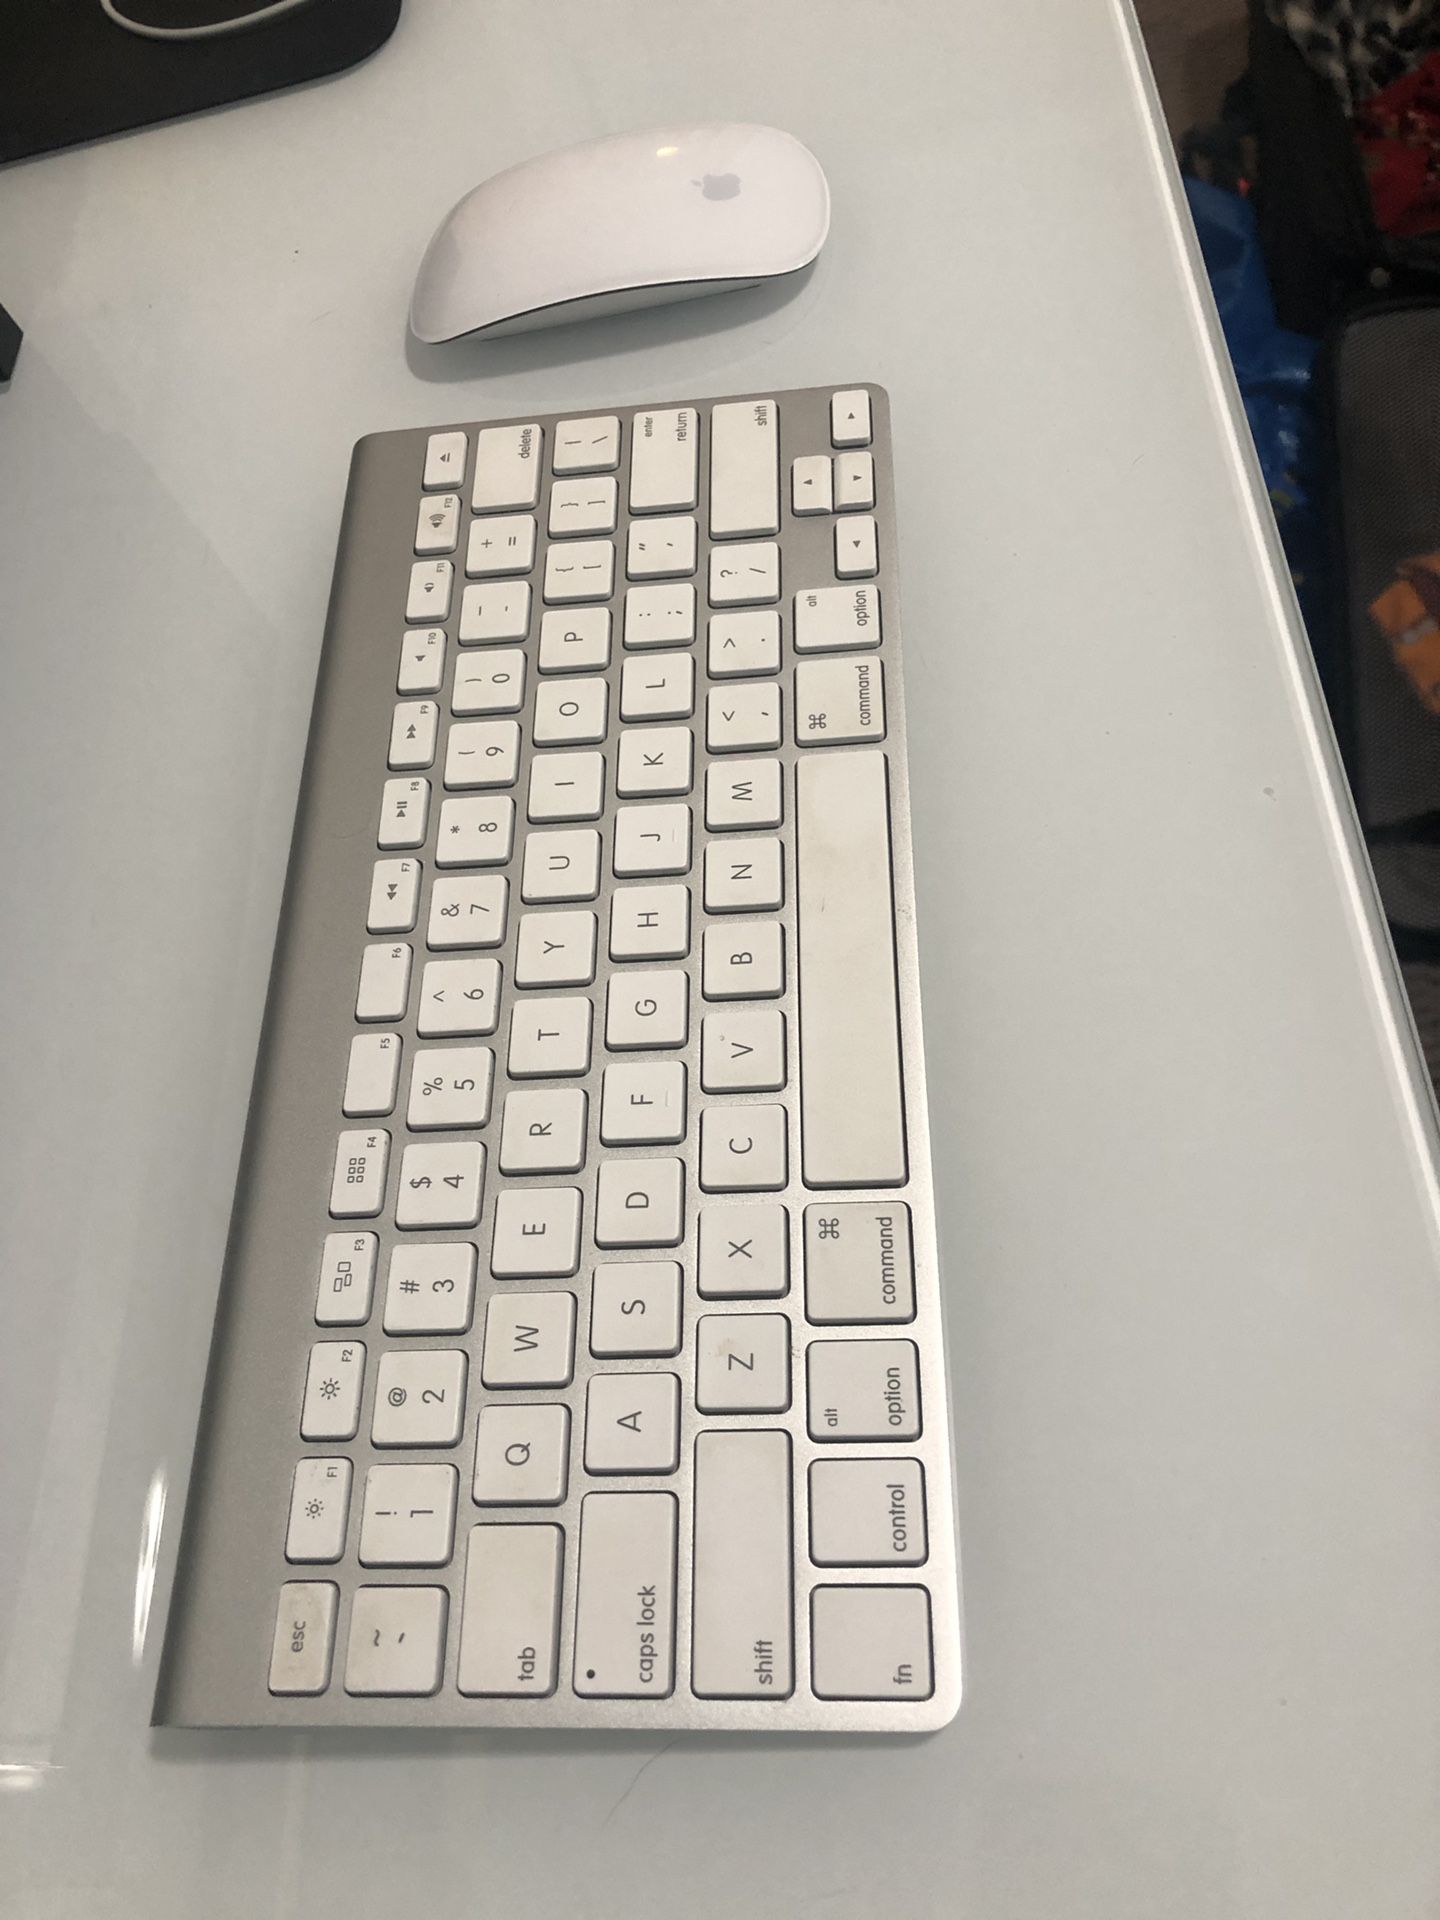 Wireless Apple Keyboard & Mouse $120 OBO